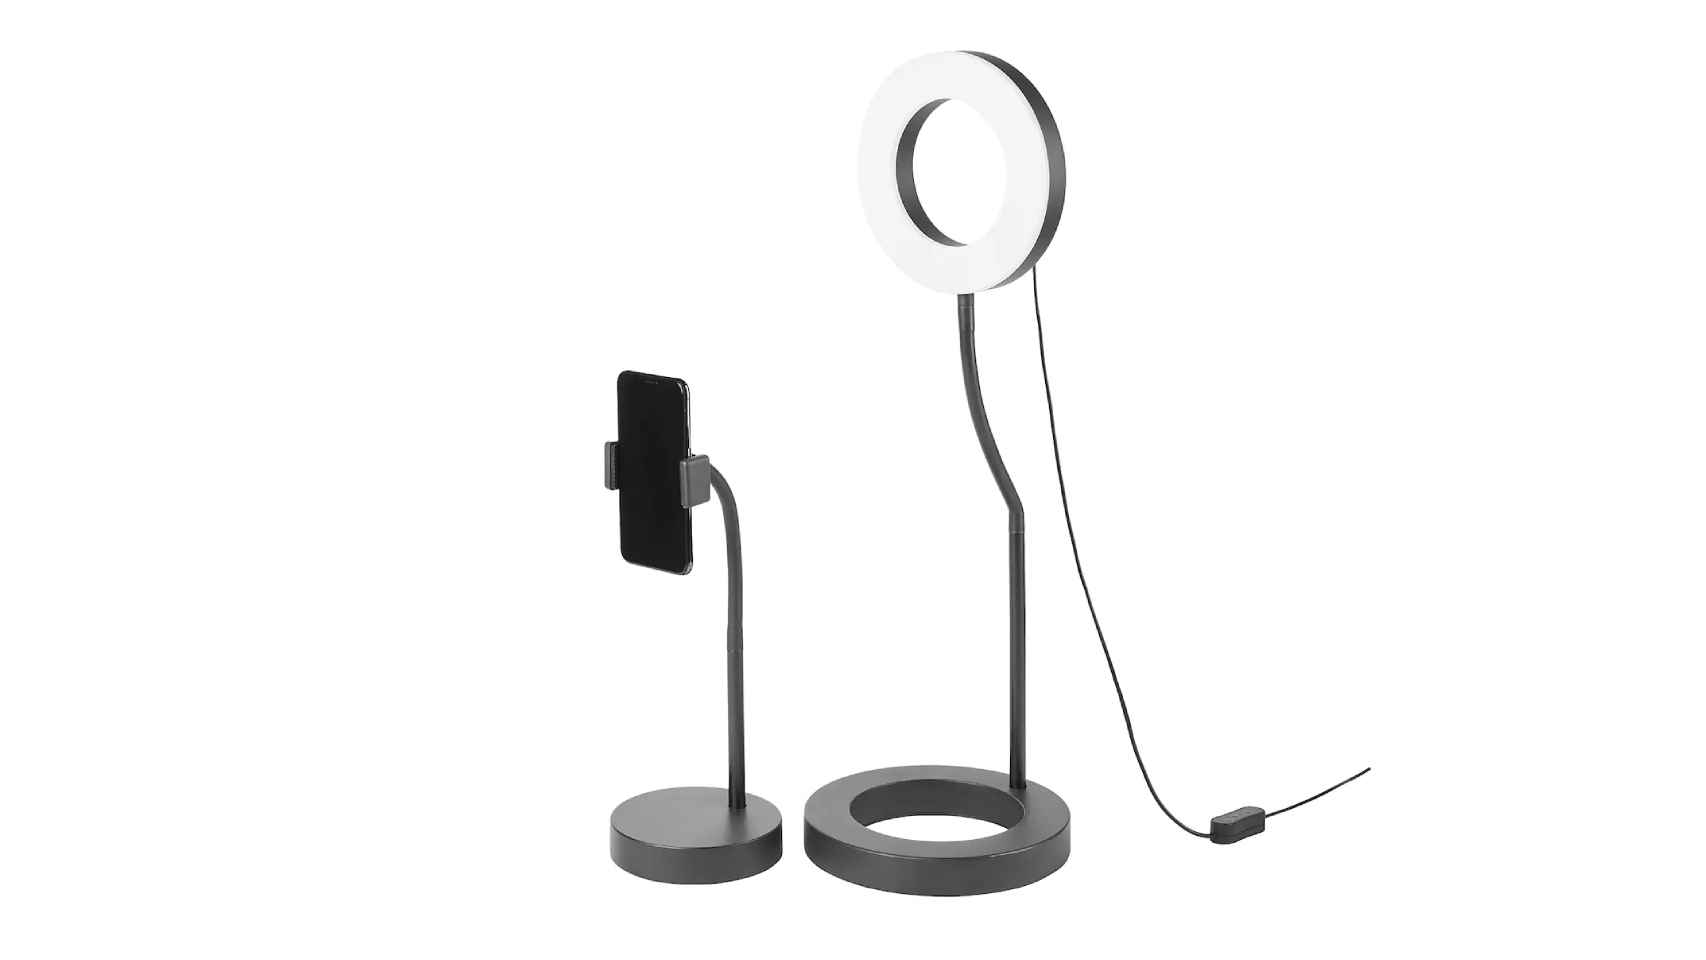 Así es el nuevo anillo de luz con soporte para móvil de Ikea.